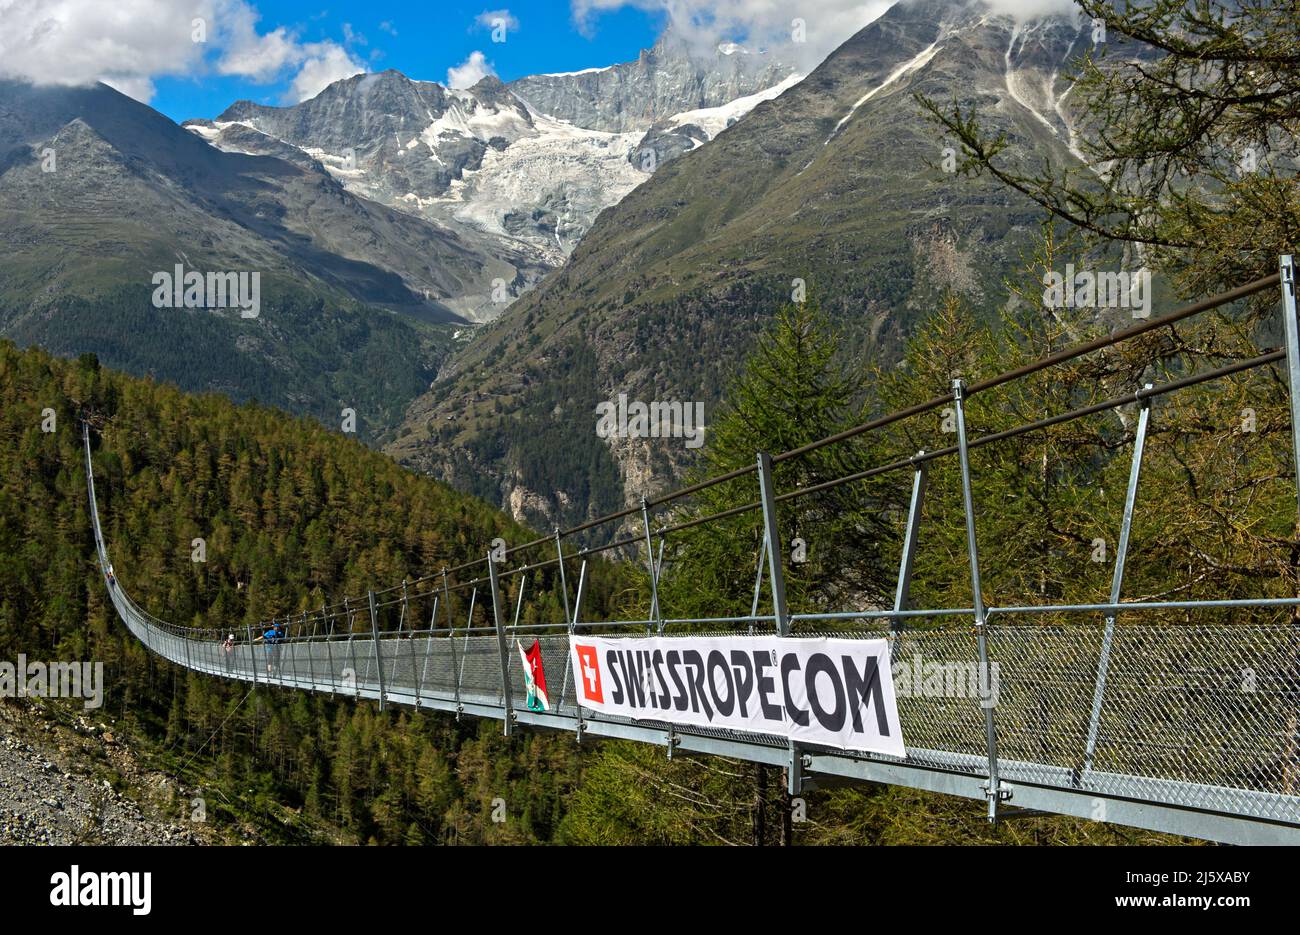 Puente colgante Charles Kuonen, construido por la compañía suiza Swissope AG, Randa, Valais, Suiza Foto de stock